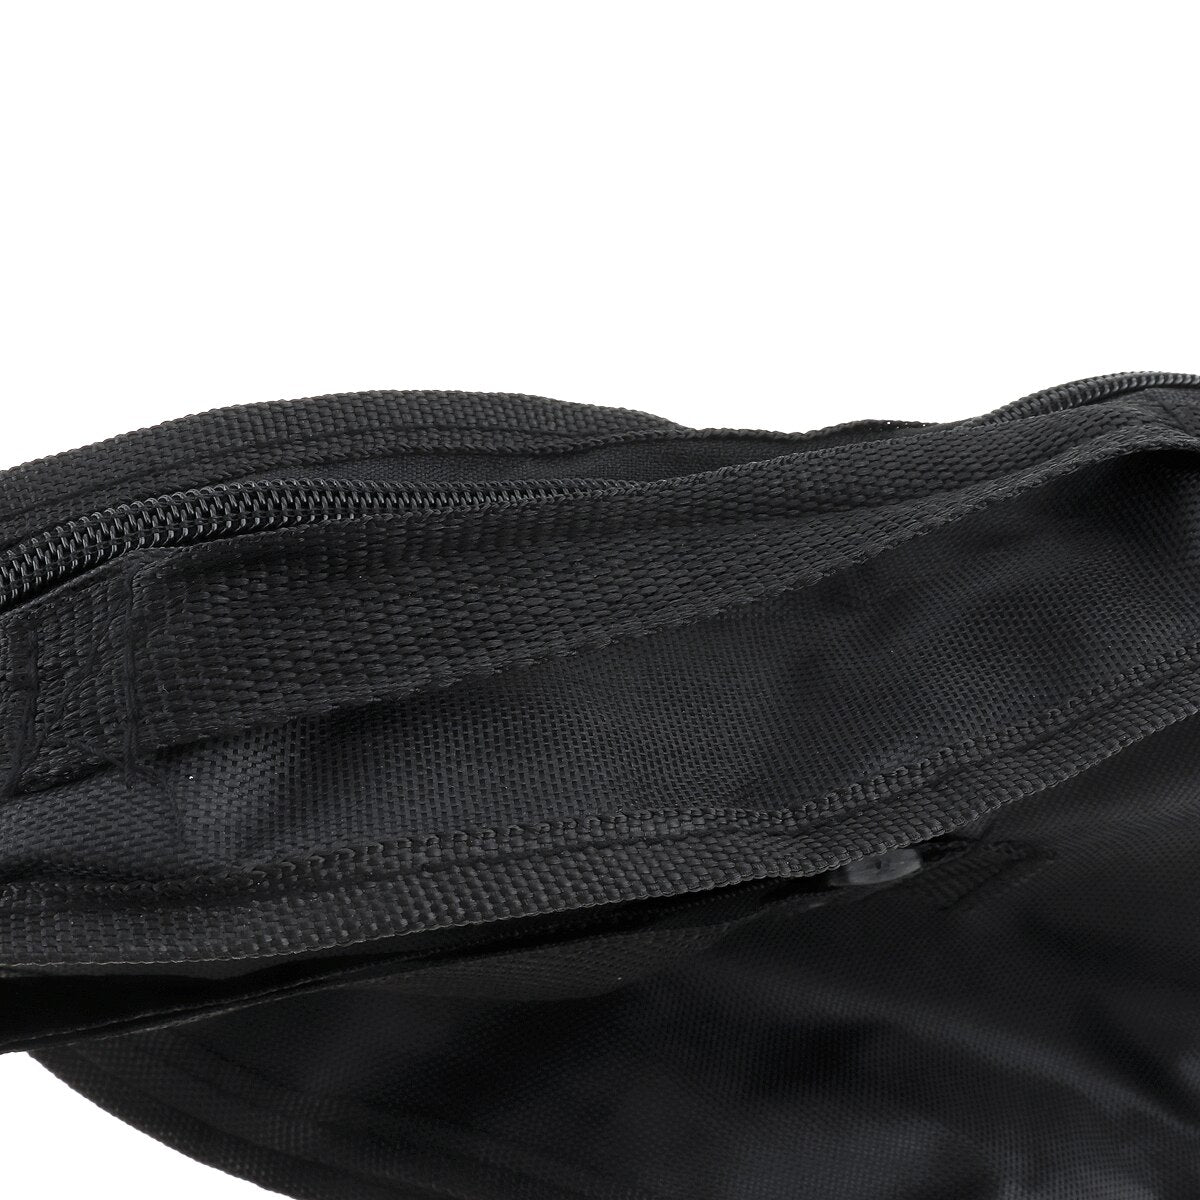 Portable Durable 21 Inch Black Ukulele Bag Soft Case Monolayer Bag Single Shoulder Backpack Padded  Musical Instrument